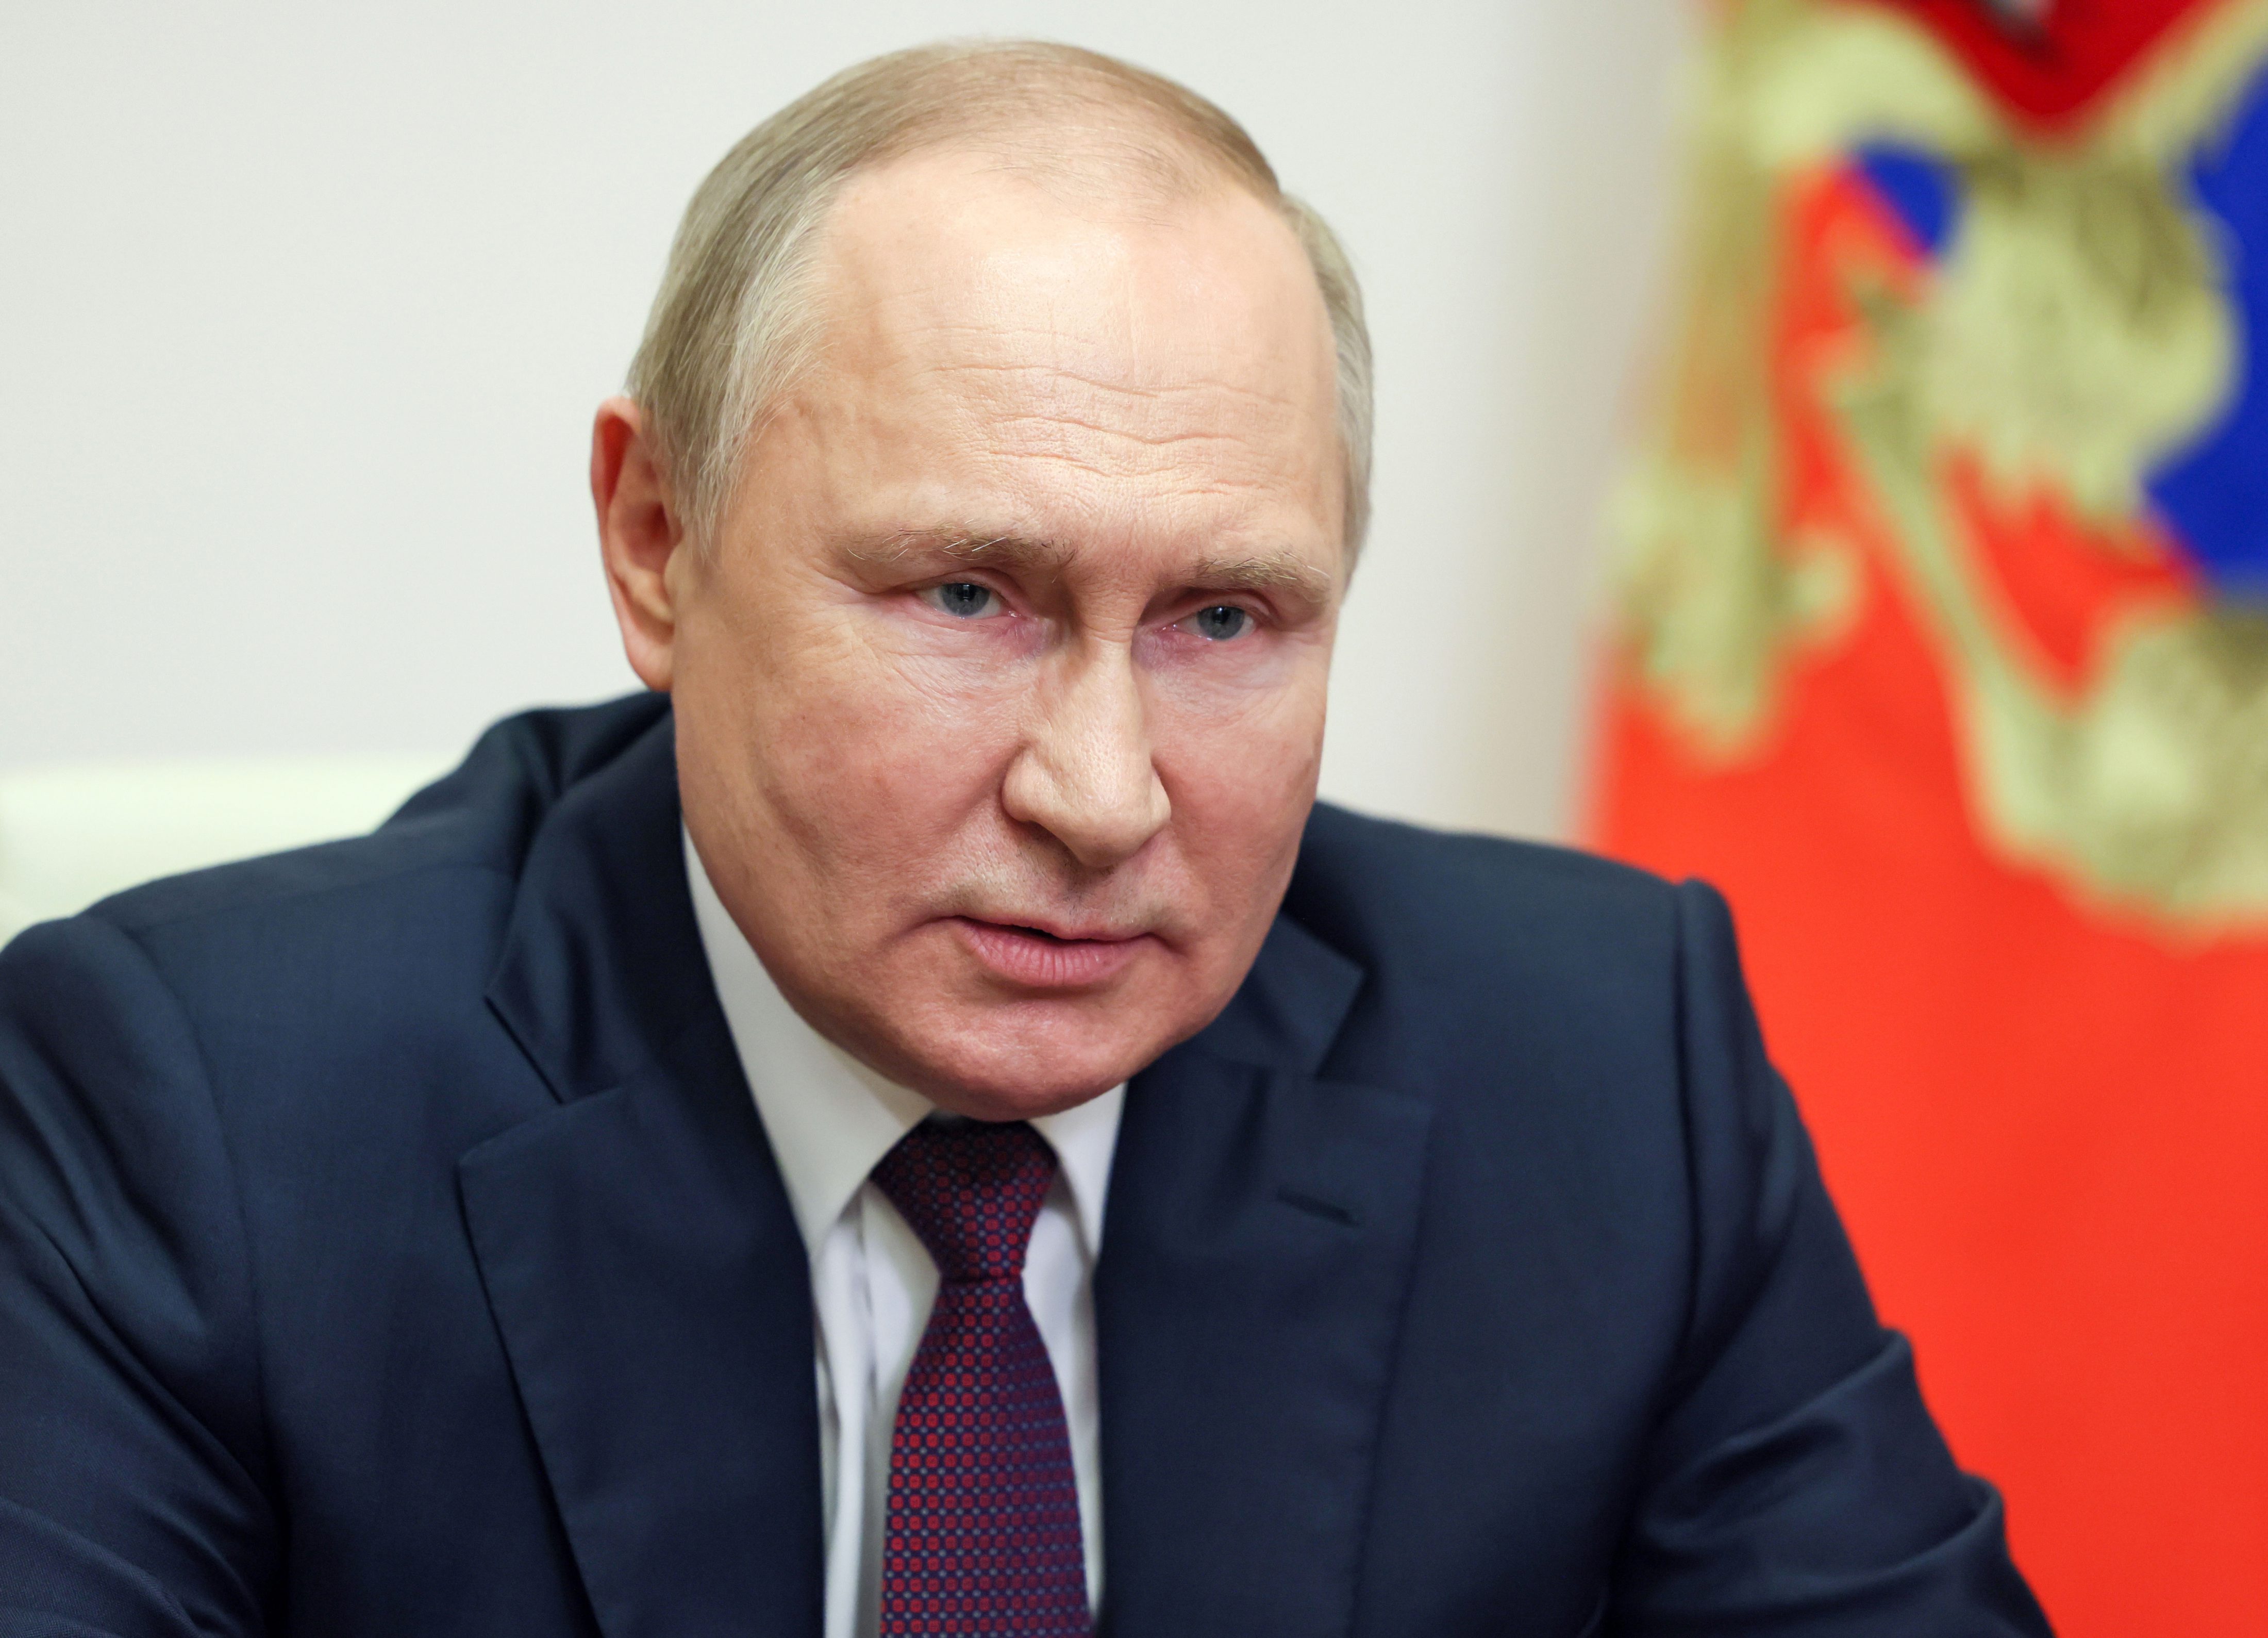 Ojos Rojos Y Surcos Profundos Los Nuevos Síntomas Que Hacen Dudar De La Salud De Putin 